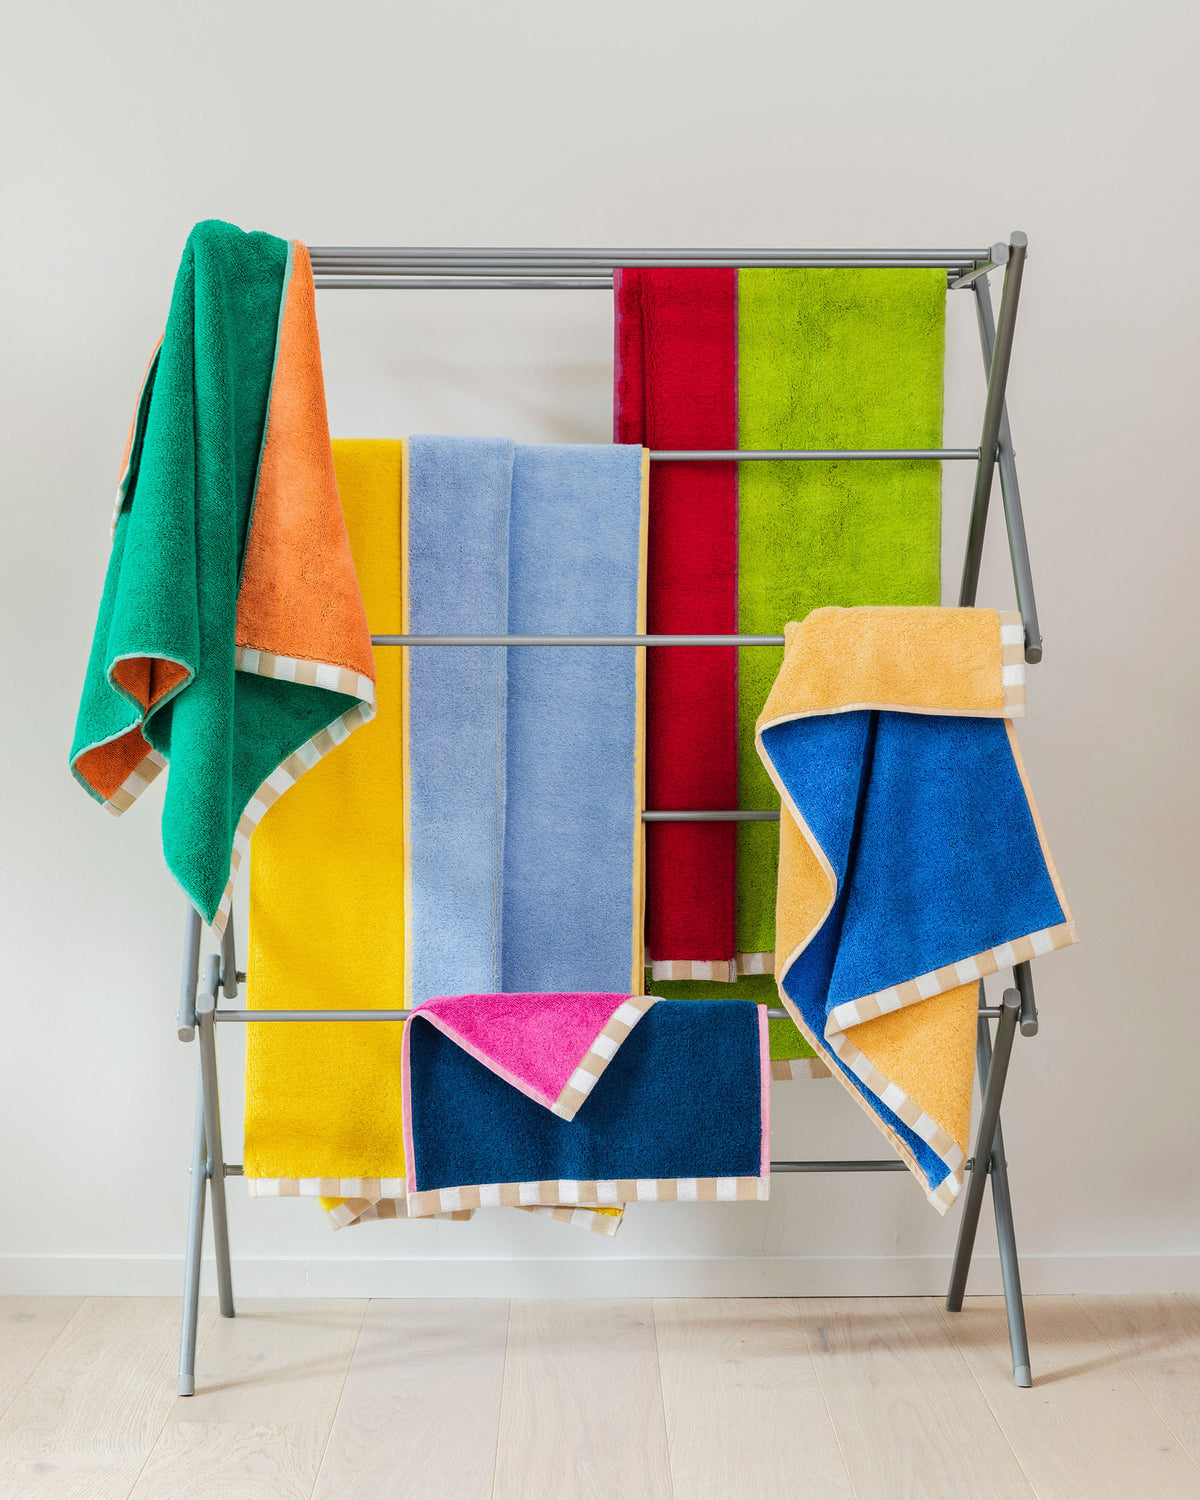 100% Cotton Assorted Color Wash Cloths